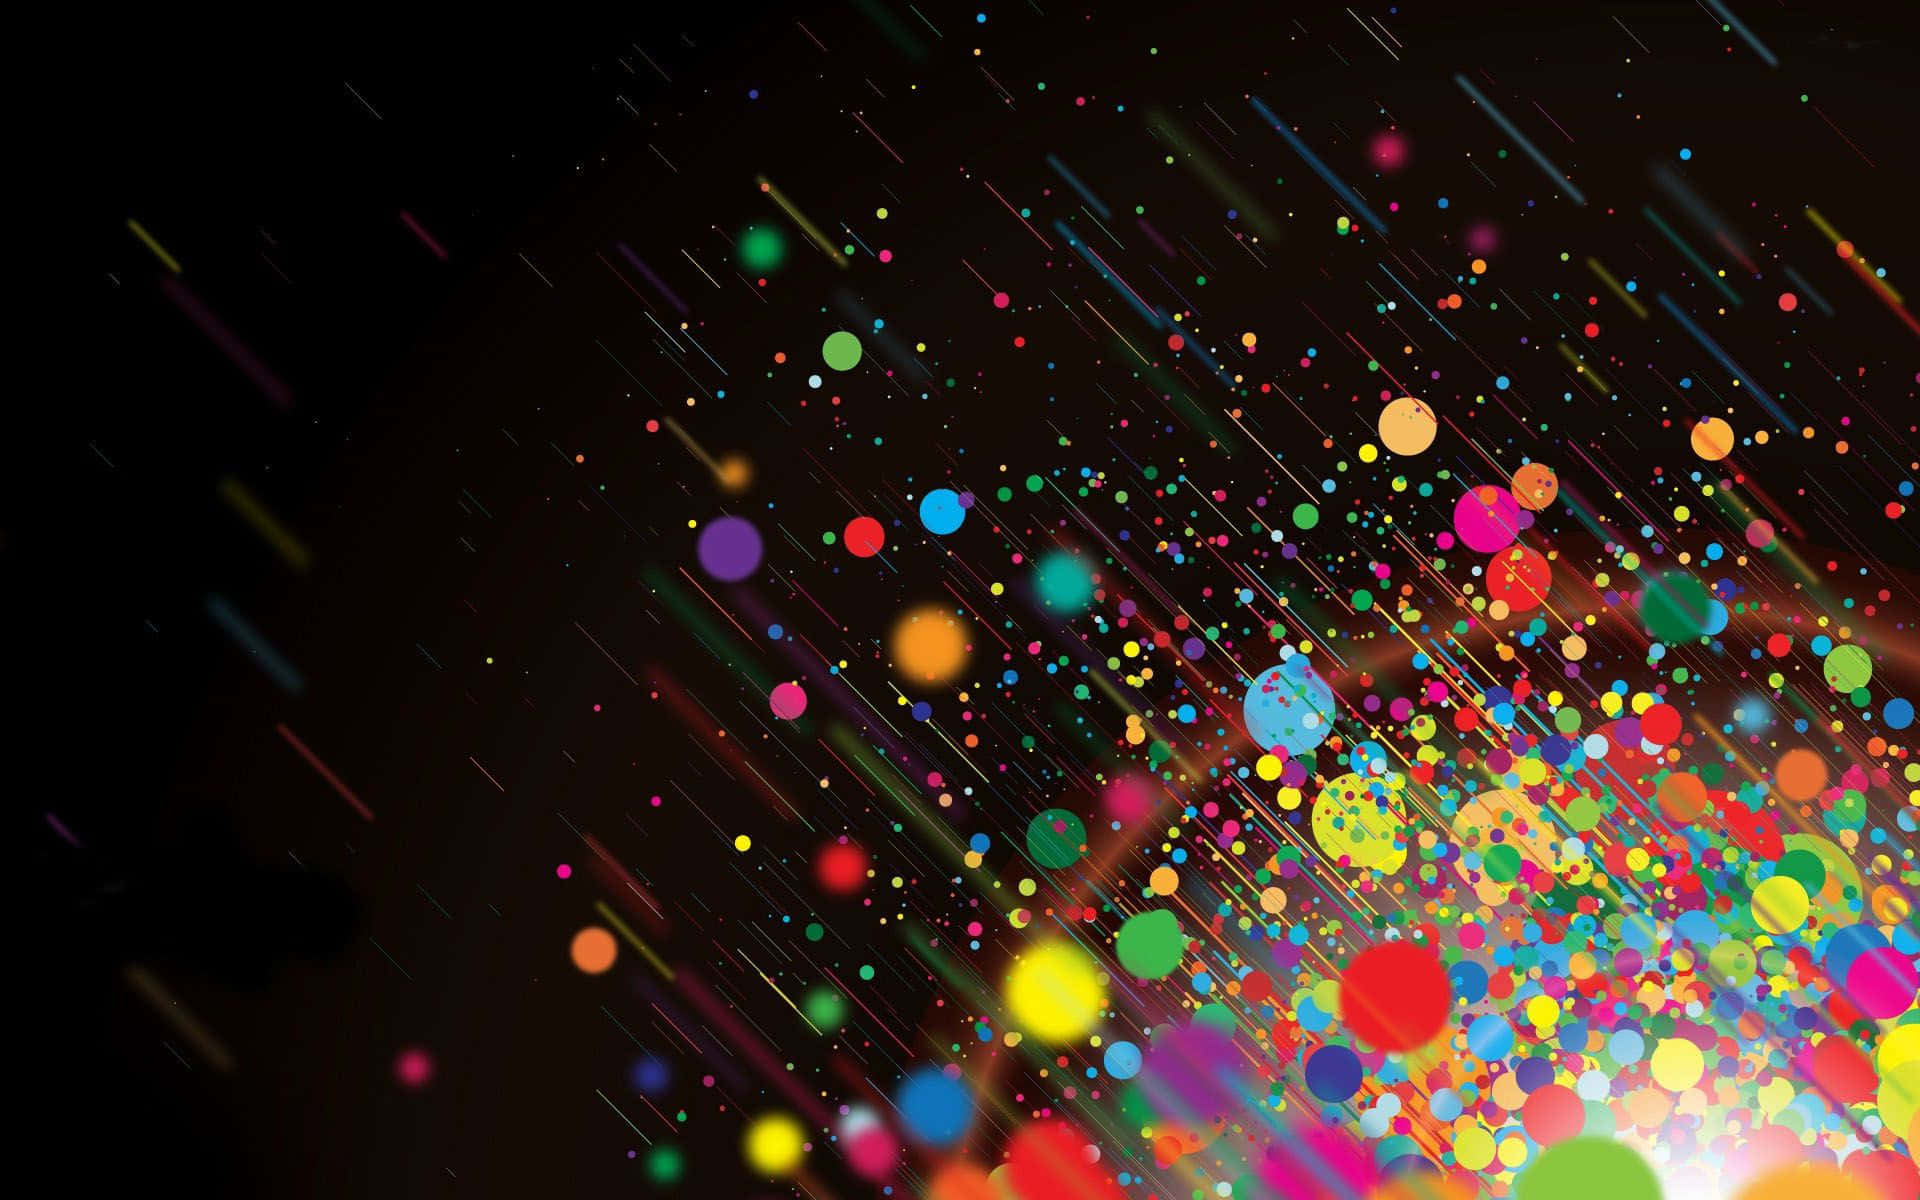 Dive Into a Sea of Colorful Bubbles